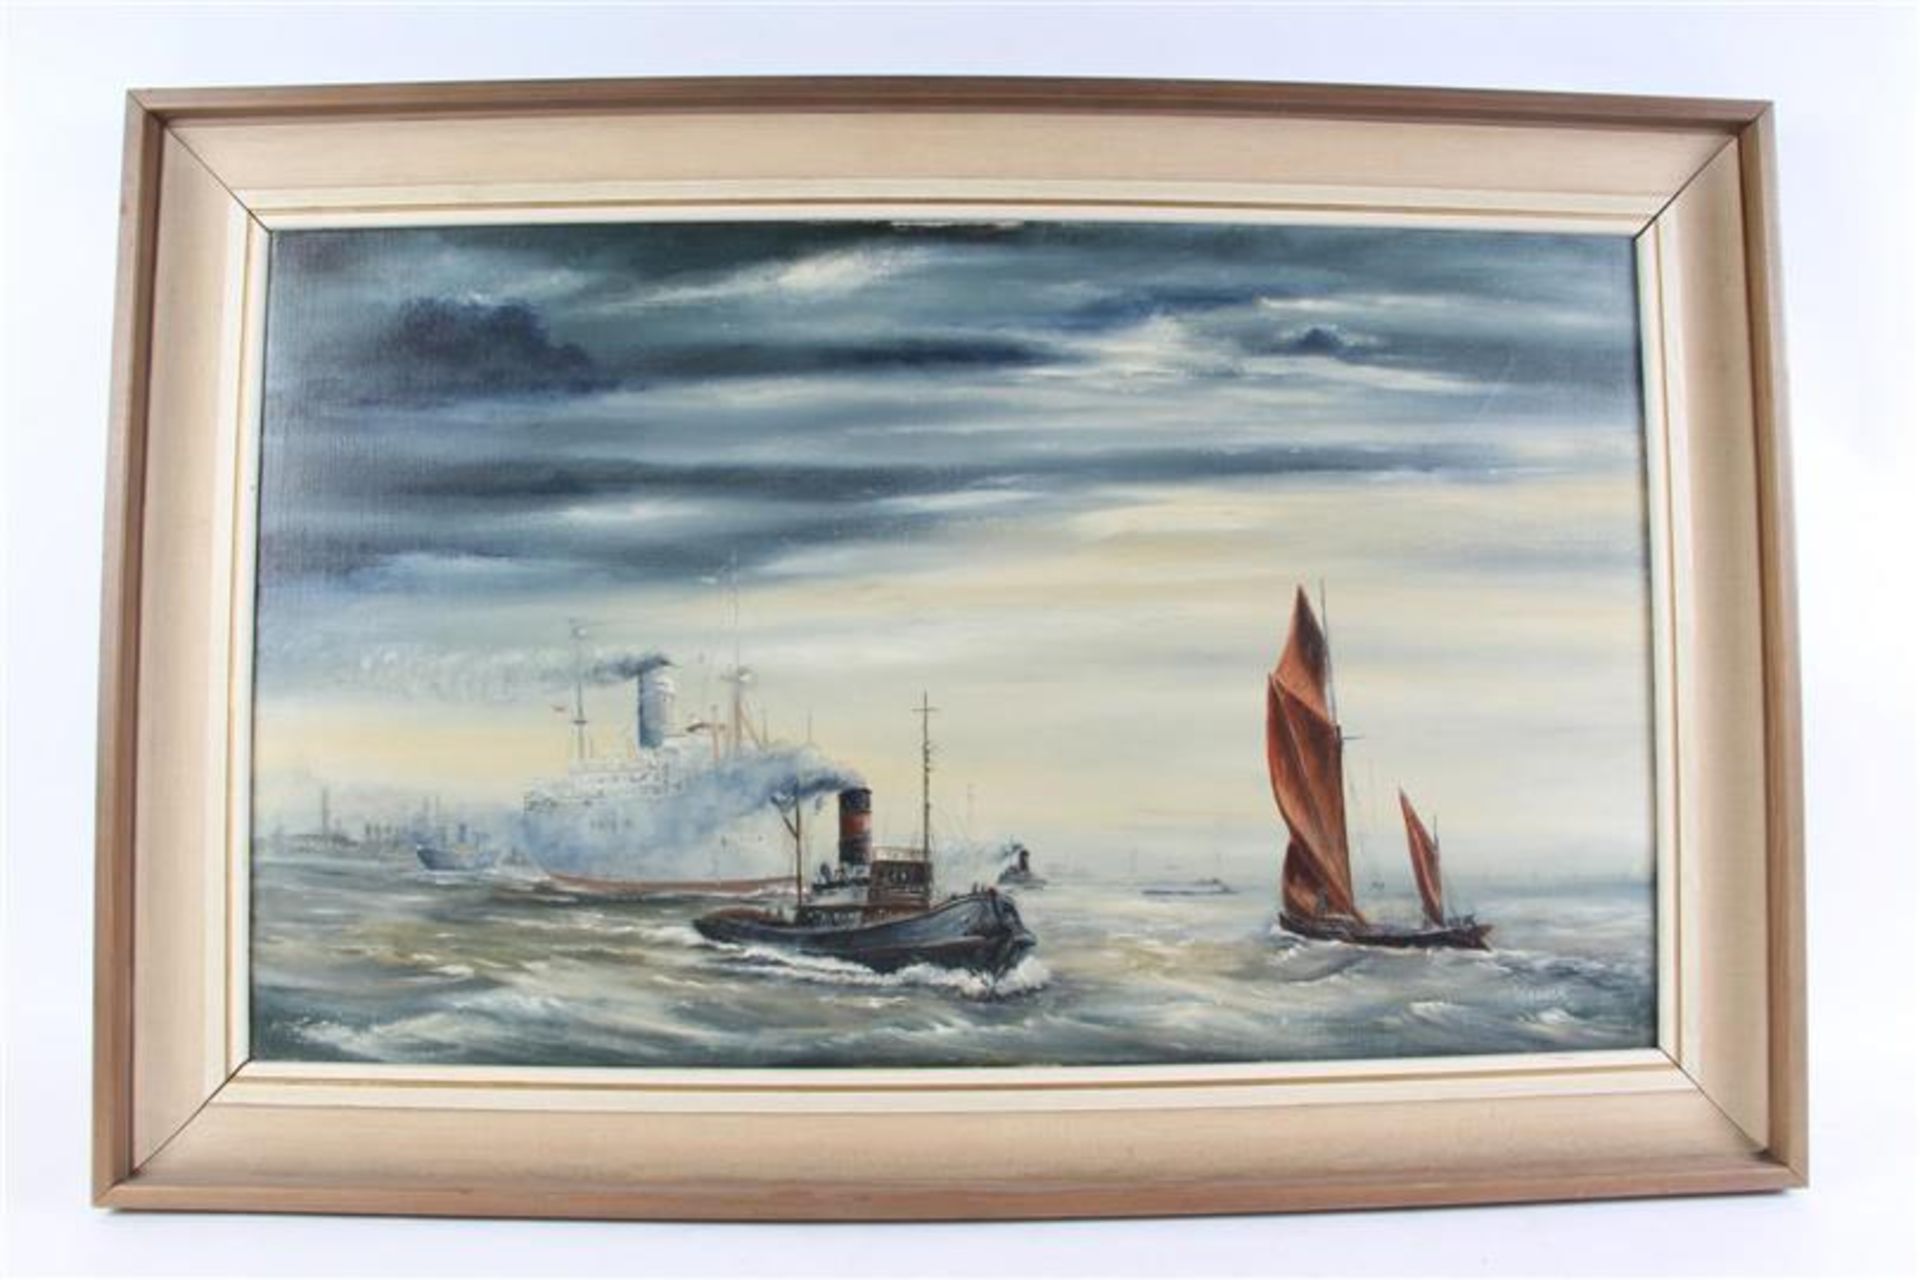 Schilderij op doek 'Scheepvaart', gesigneerd Warden '71. HxB: 44.5 x 75 cm.